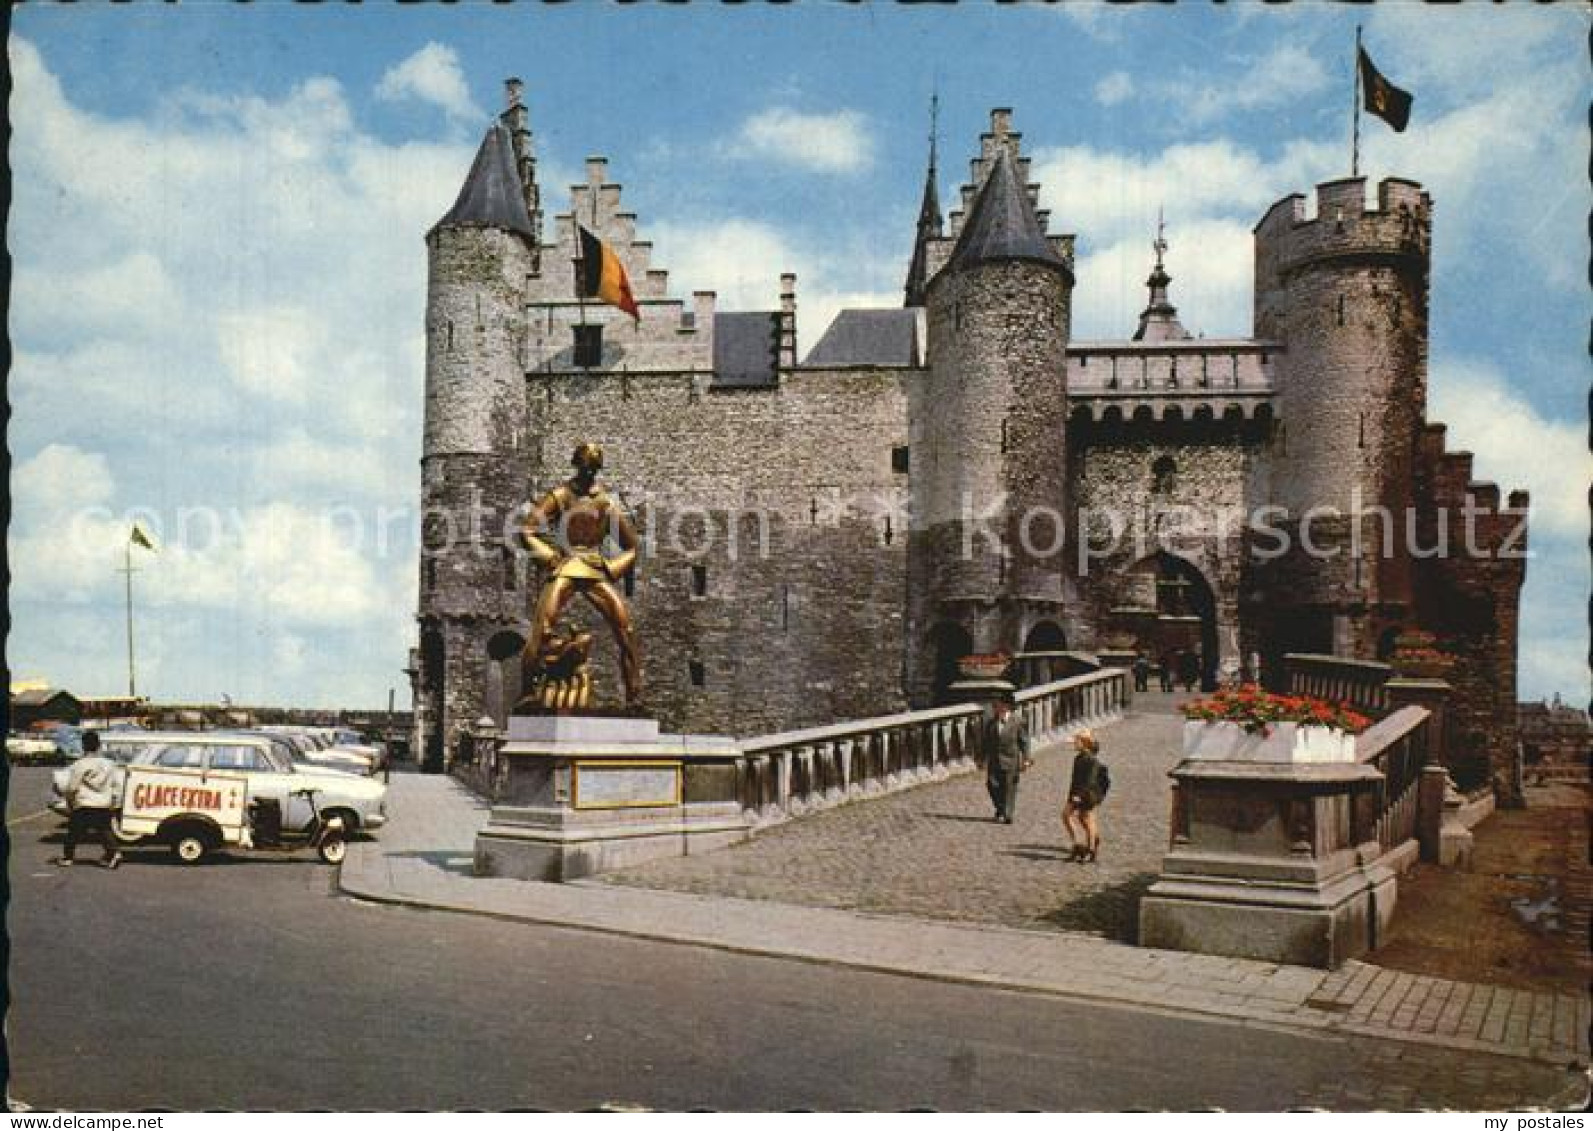 72579317 Antwerpen Anvers Steen Schloss  - Antwerpen